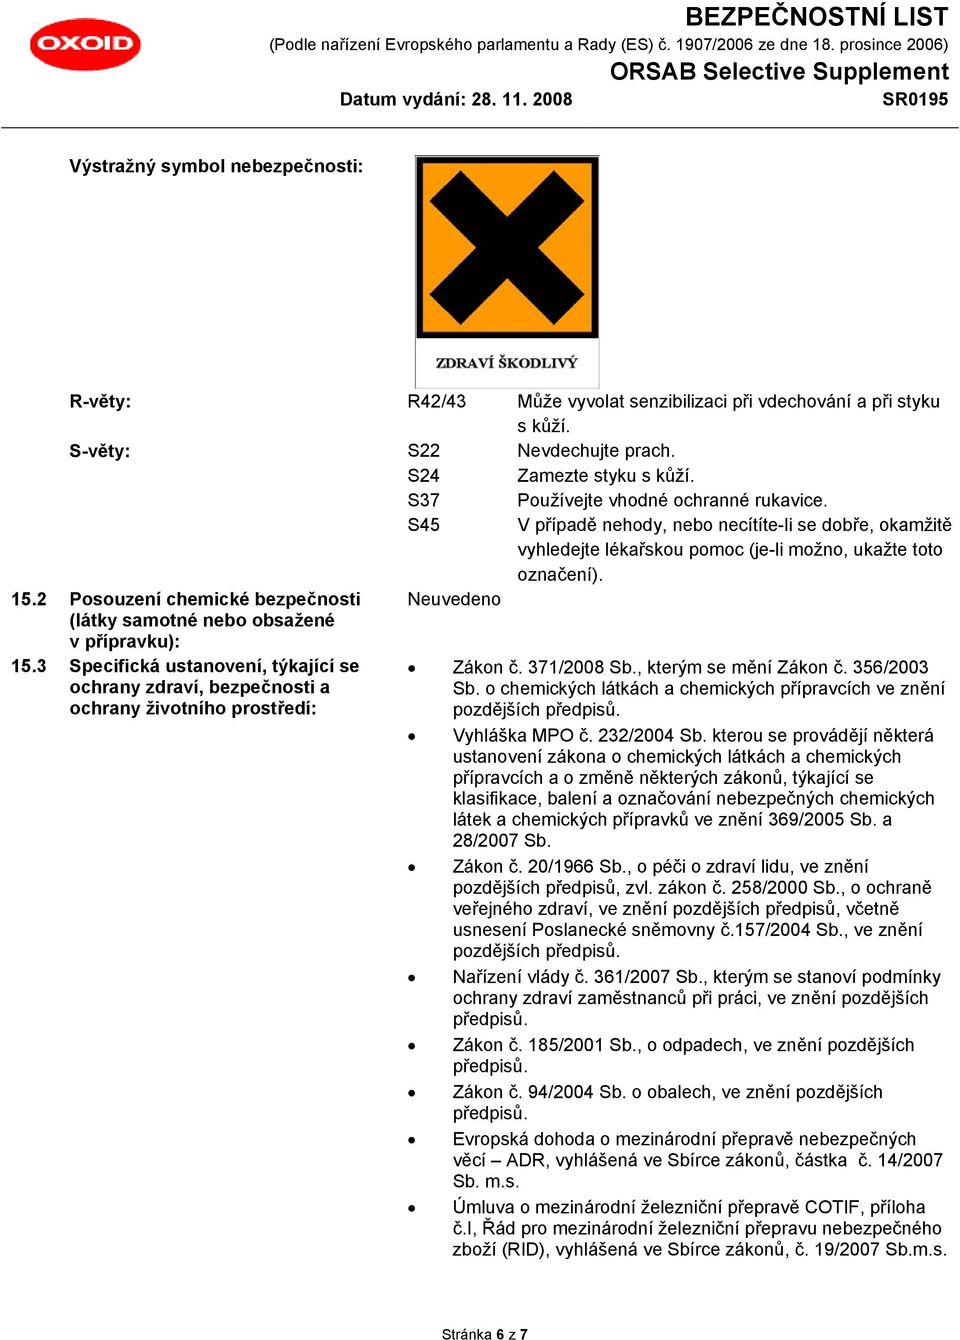 2 Posouzení chemické bezpečnosti (látky samotné nebo obsažené v přípravku): 15.3 Specifická ustanovení, týkající se ochrany zdraví, bezpečnosti a ochrany životního prostředí: Zákon č. 371/2008 Sb.